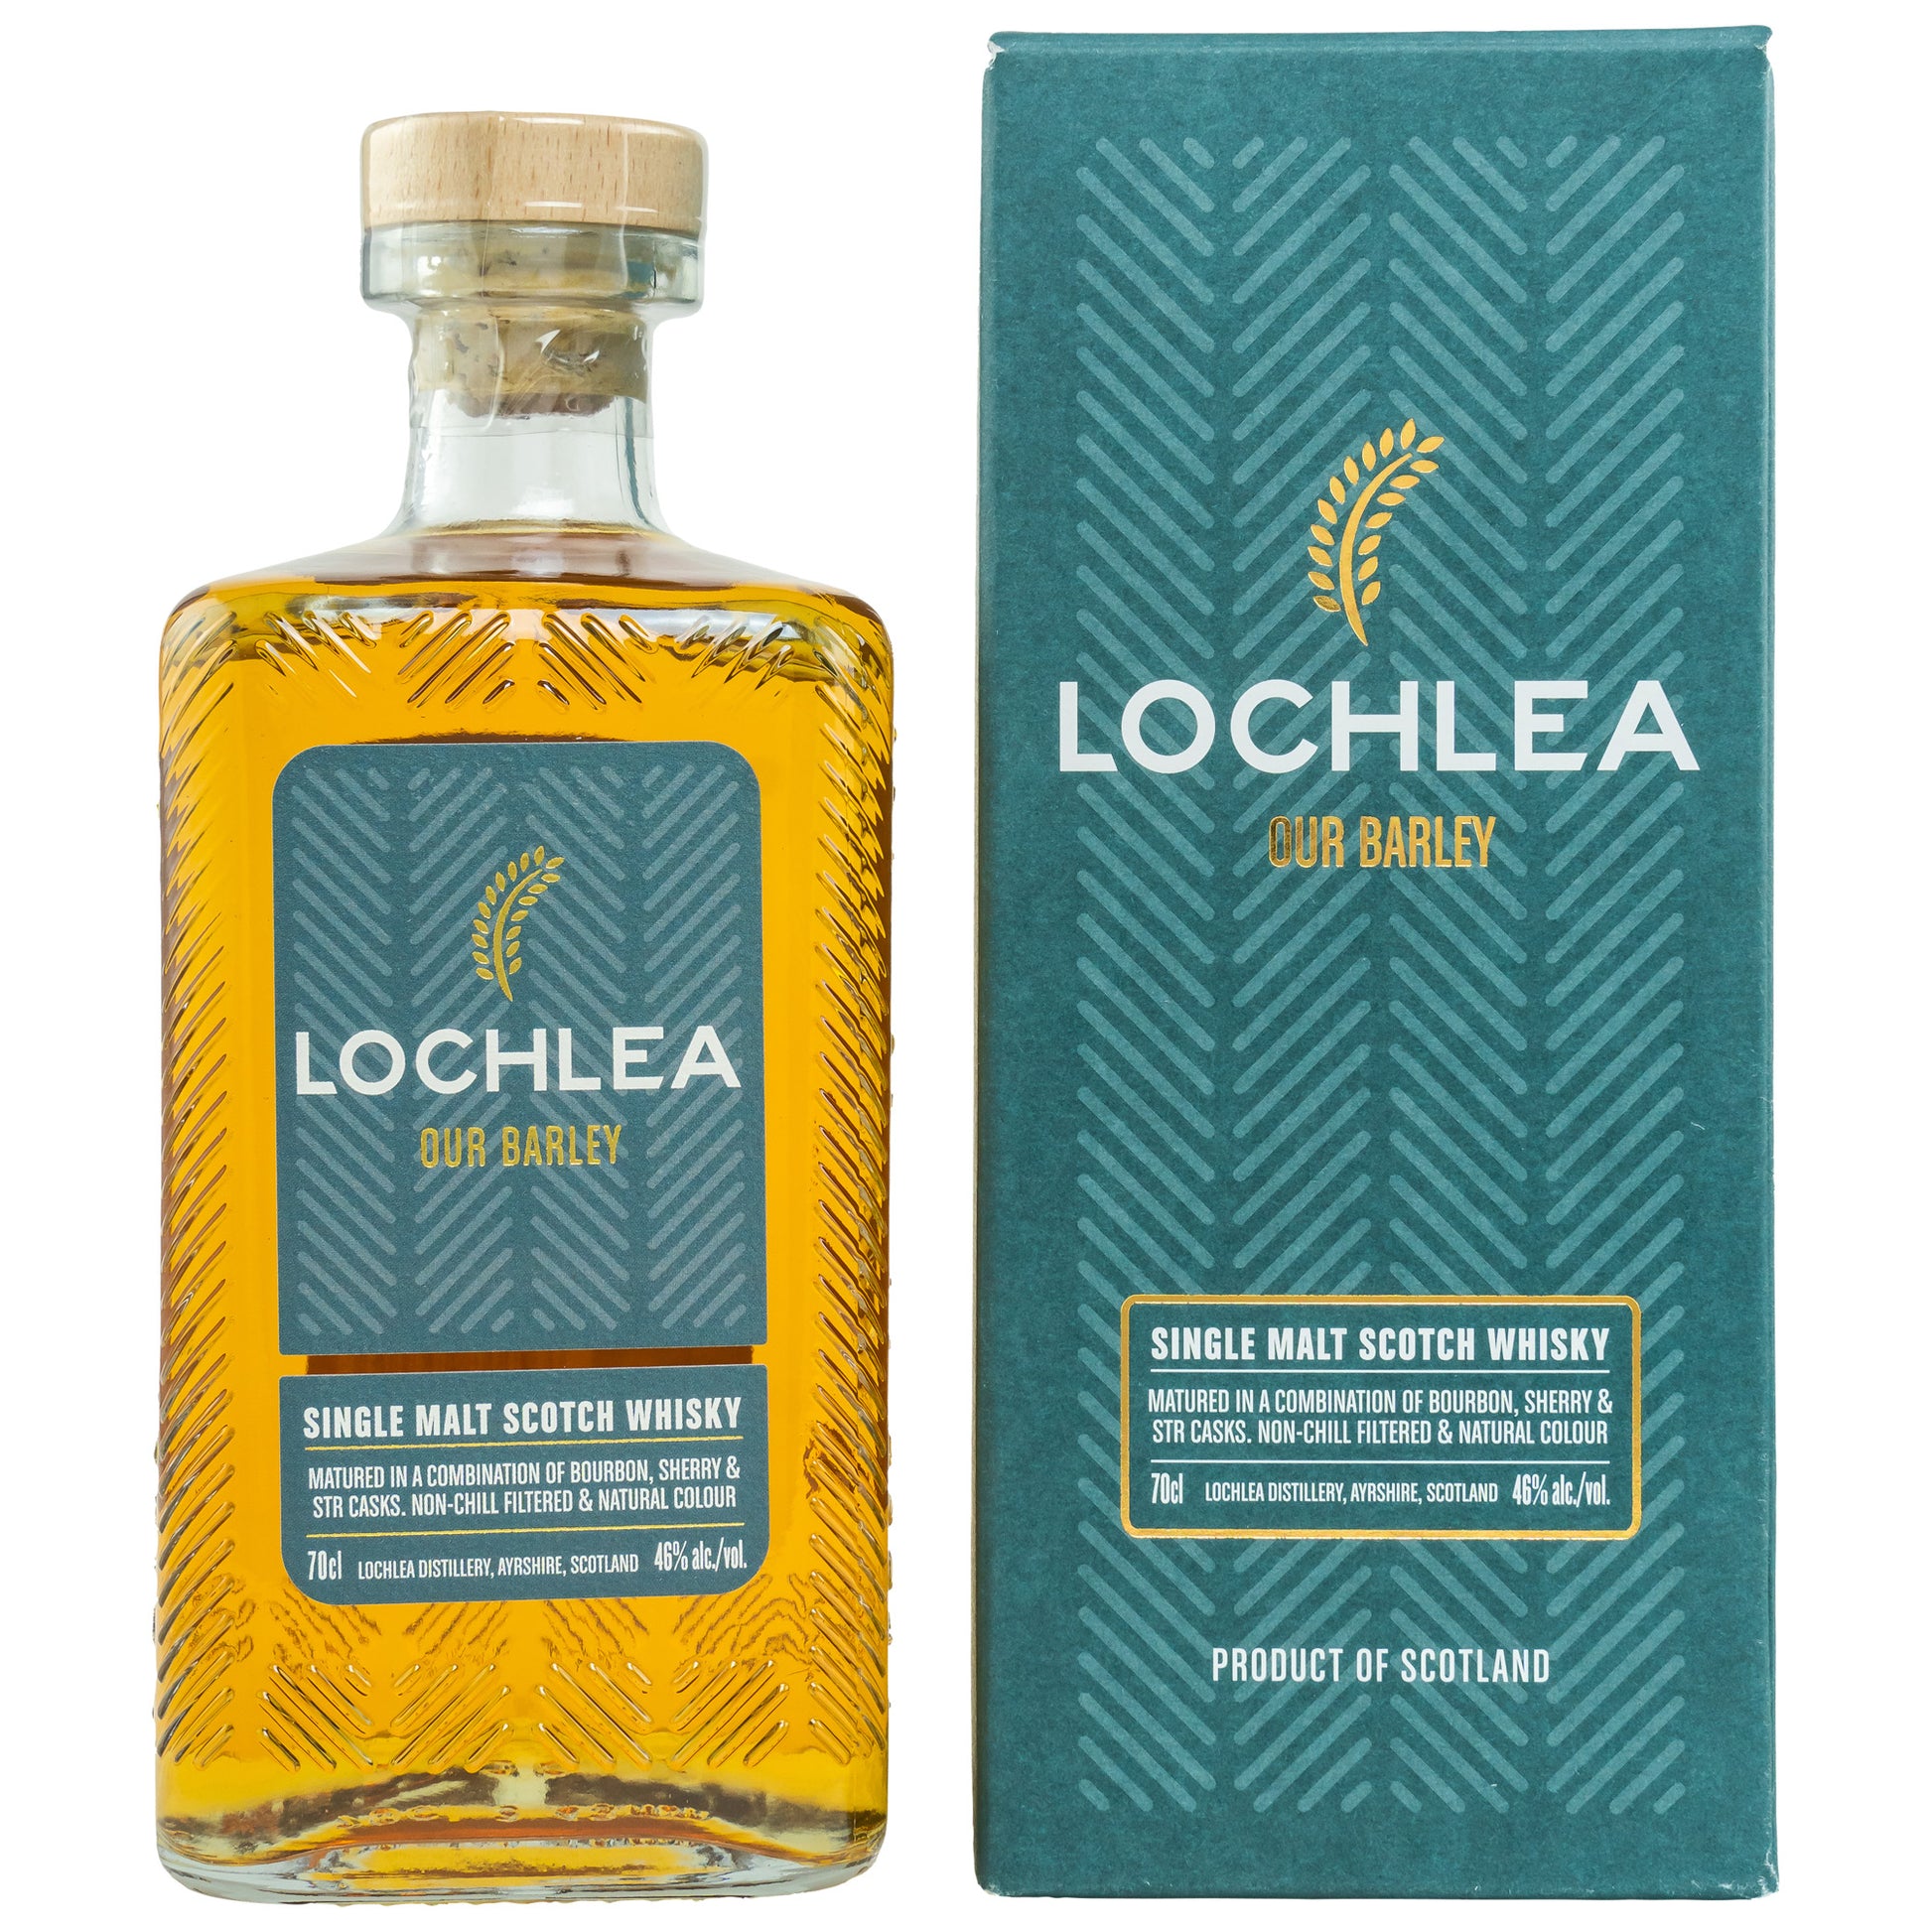 LOCHLEA - Our Barley - 46 Vol.% - Schwarzbach Spirits